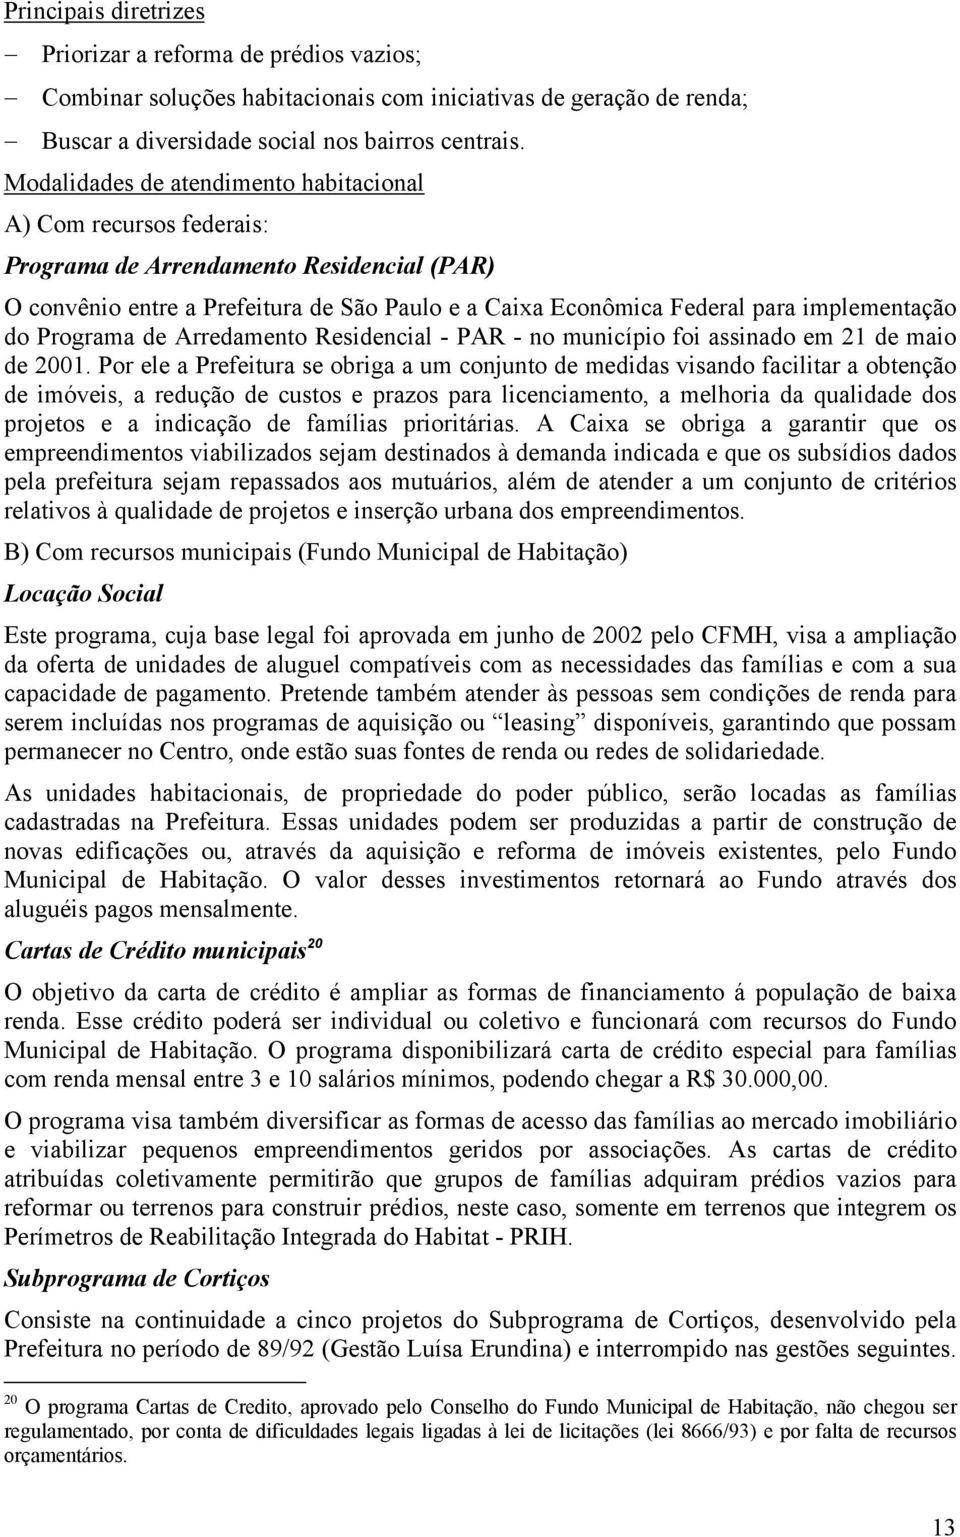 do Programa de Arredamento Residencial - PAR - no município foi assinado em 21 de maio de 2001.